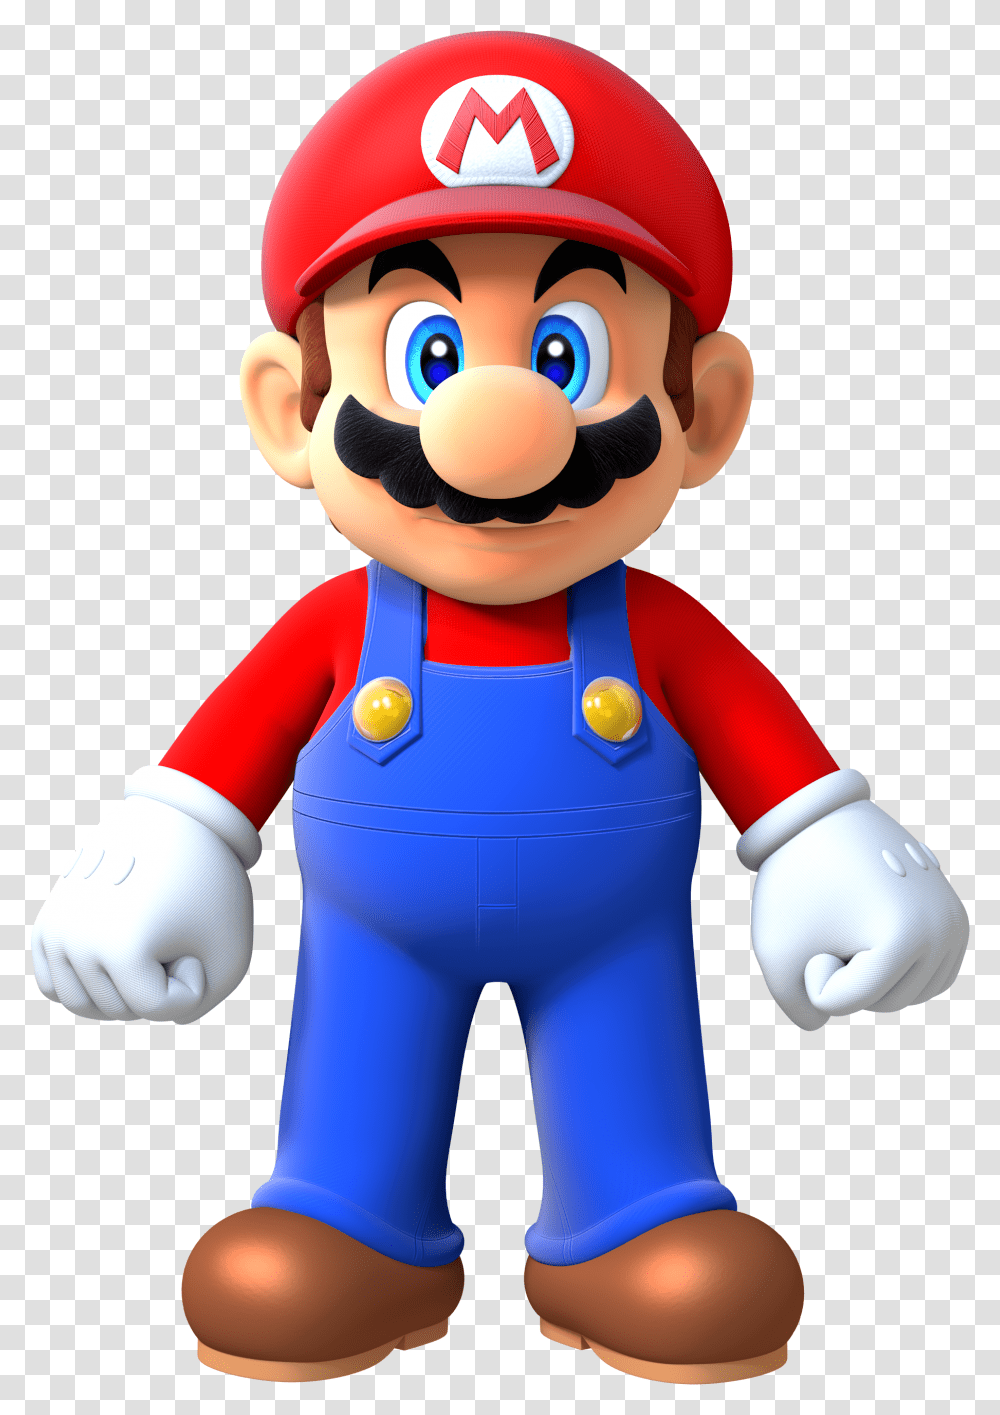 Mario Free Download Mario Bros, Super Mario, Toy Transparent Png